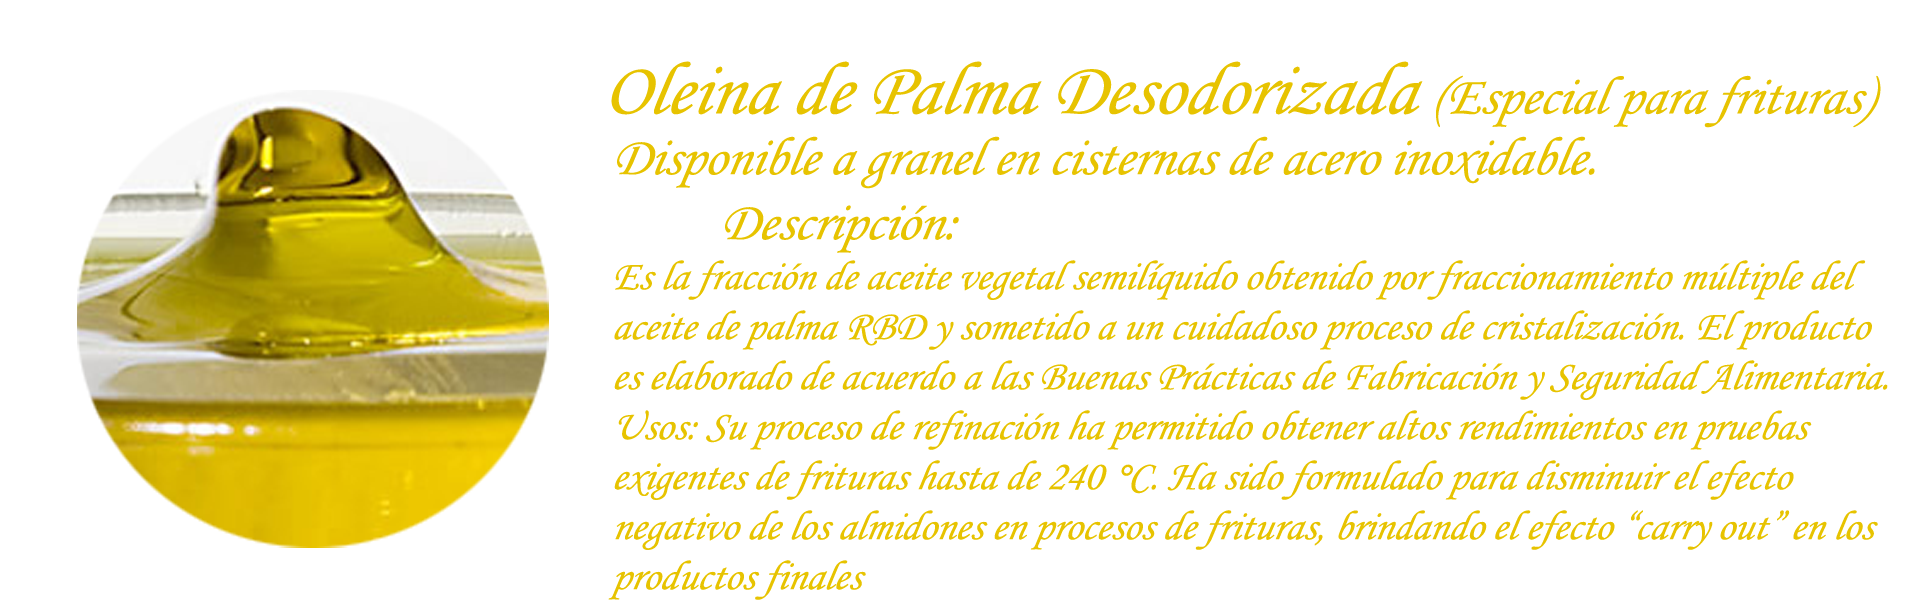 Oleina de Palma Desodorizada (Especial para frituras)